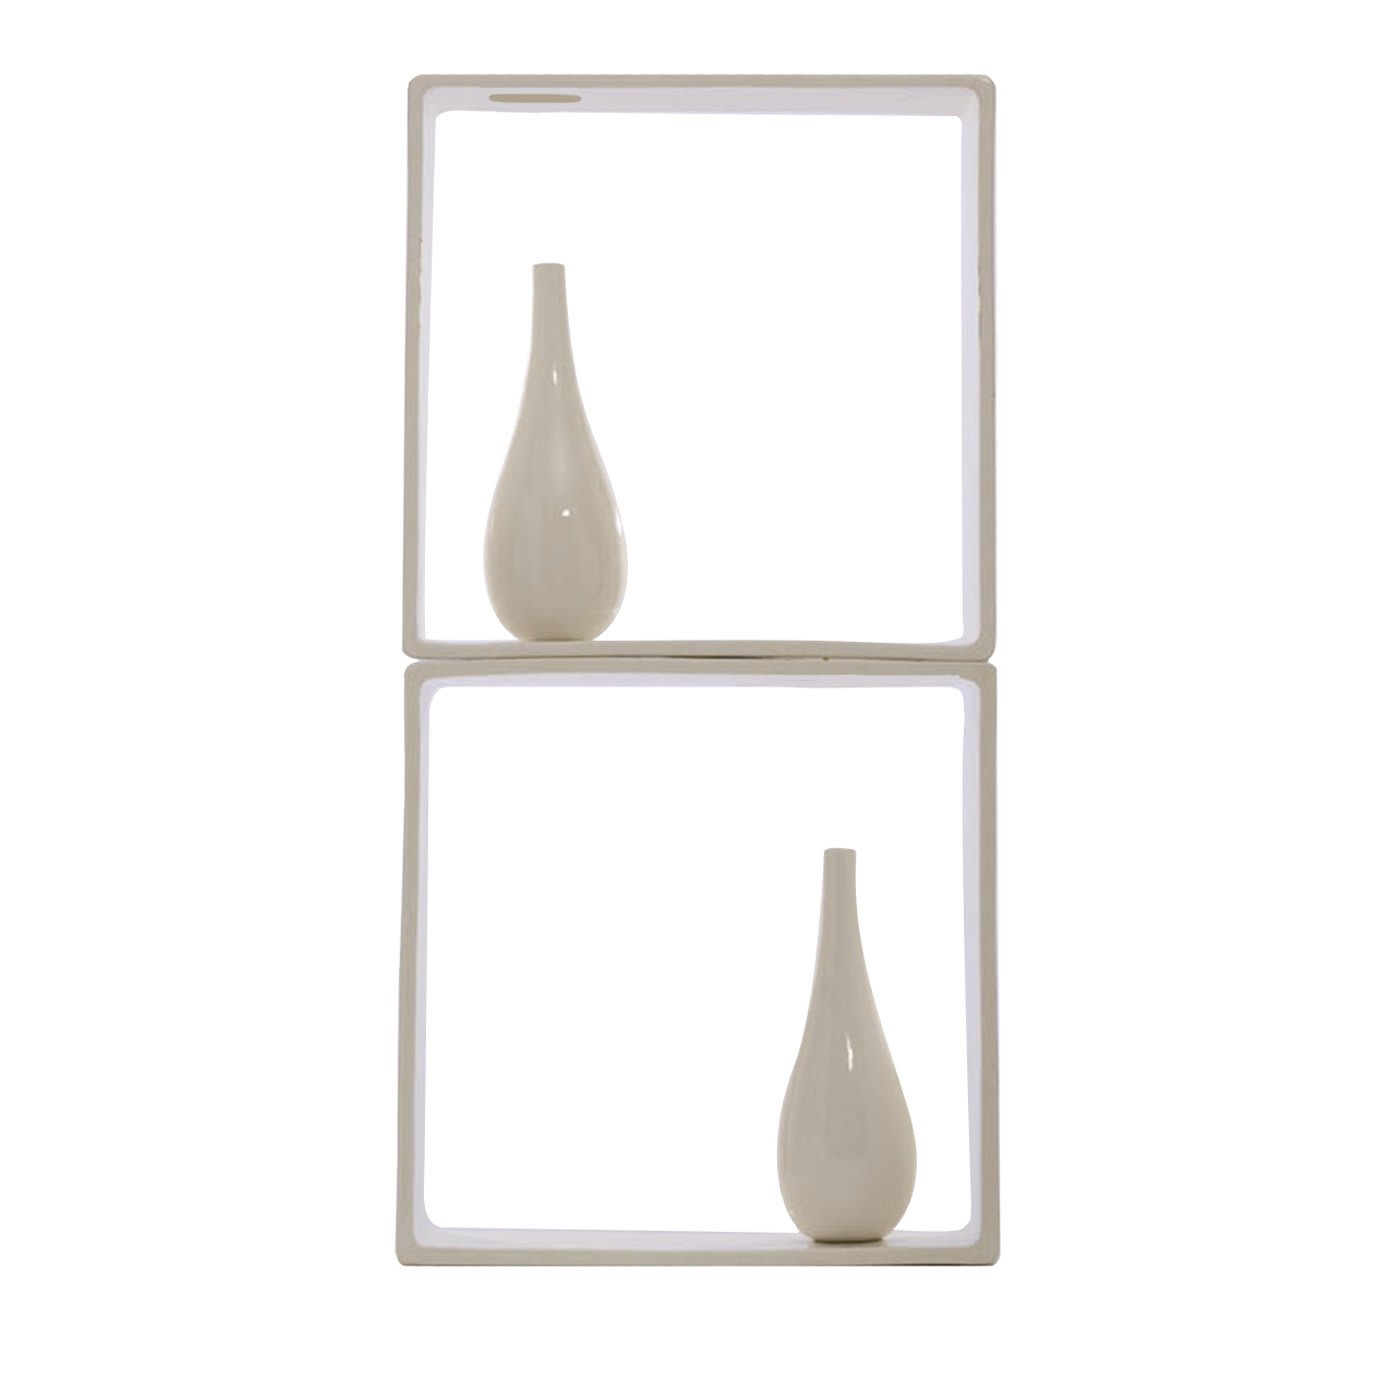 Portali 5 Vase by Andrea Branzi - Superego Design